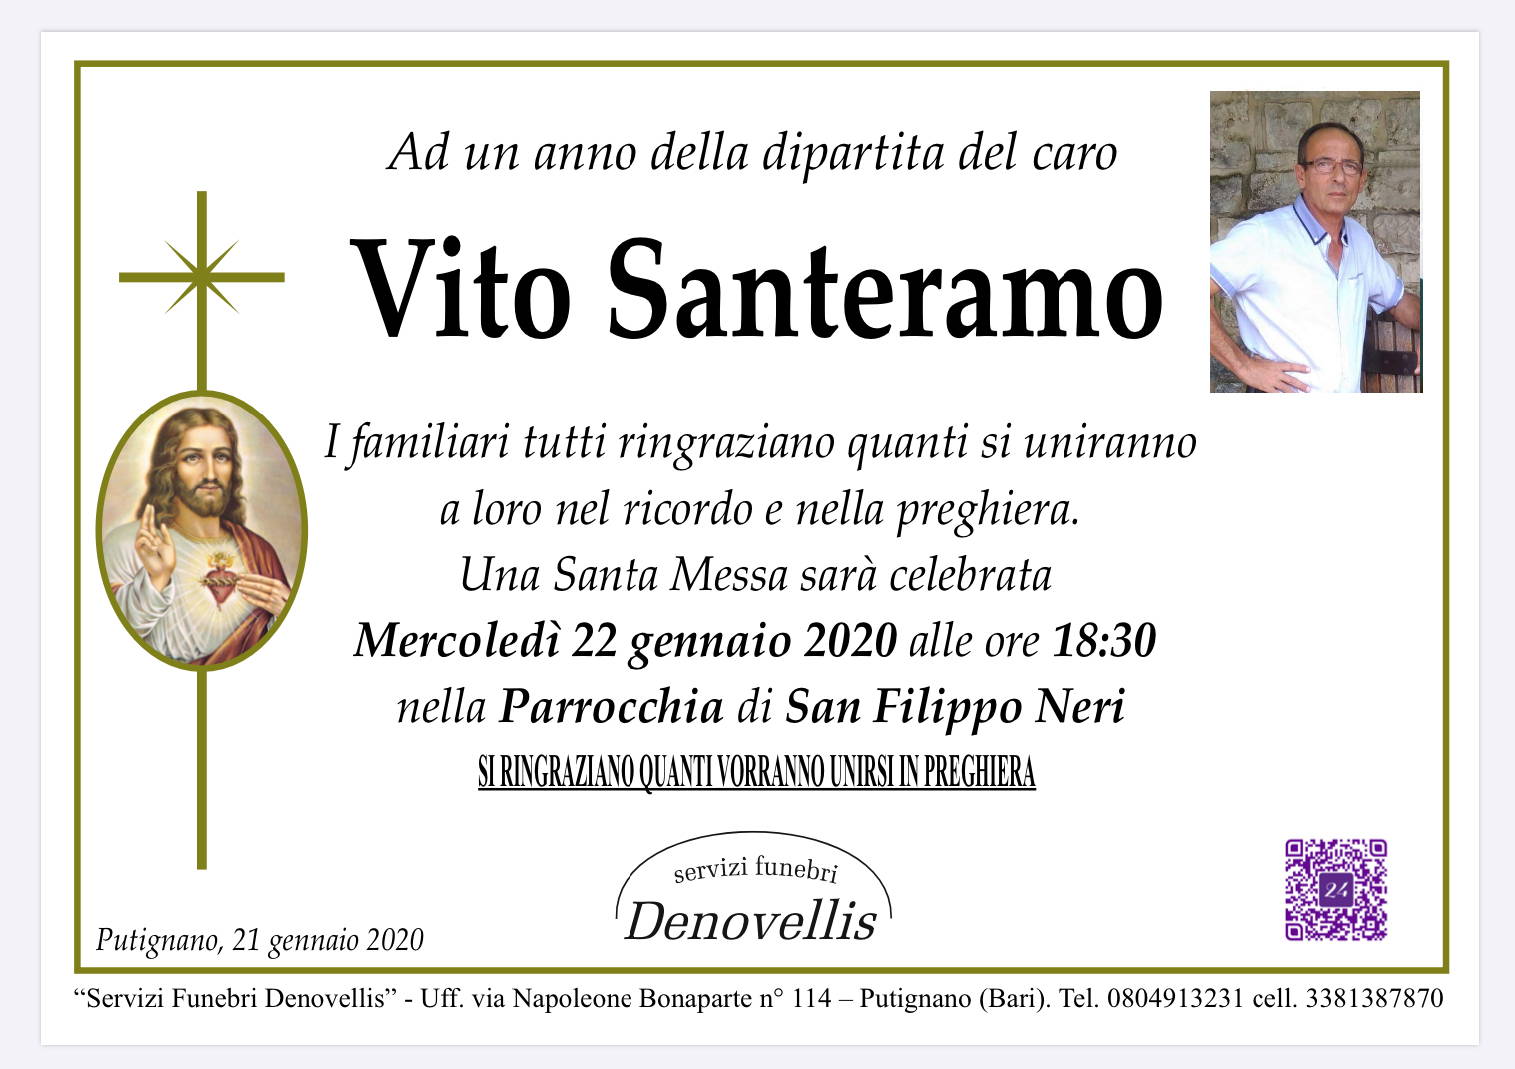 Vito Santeramo